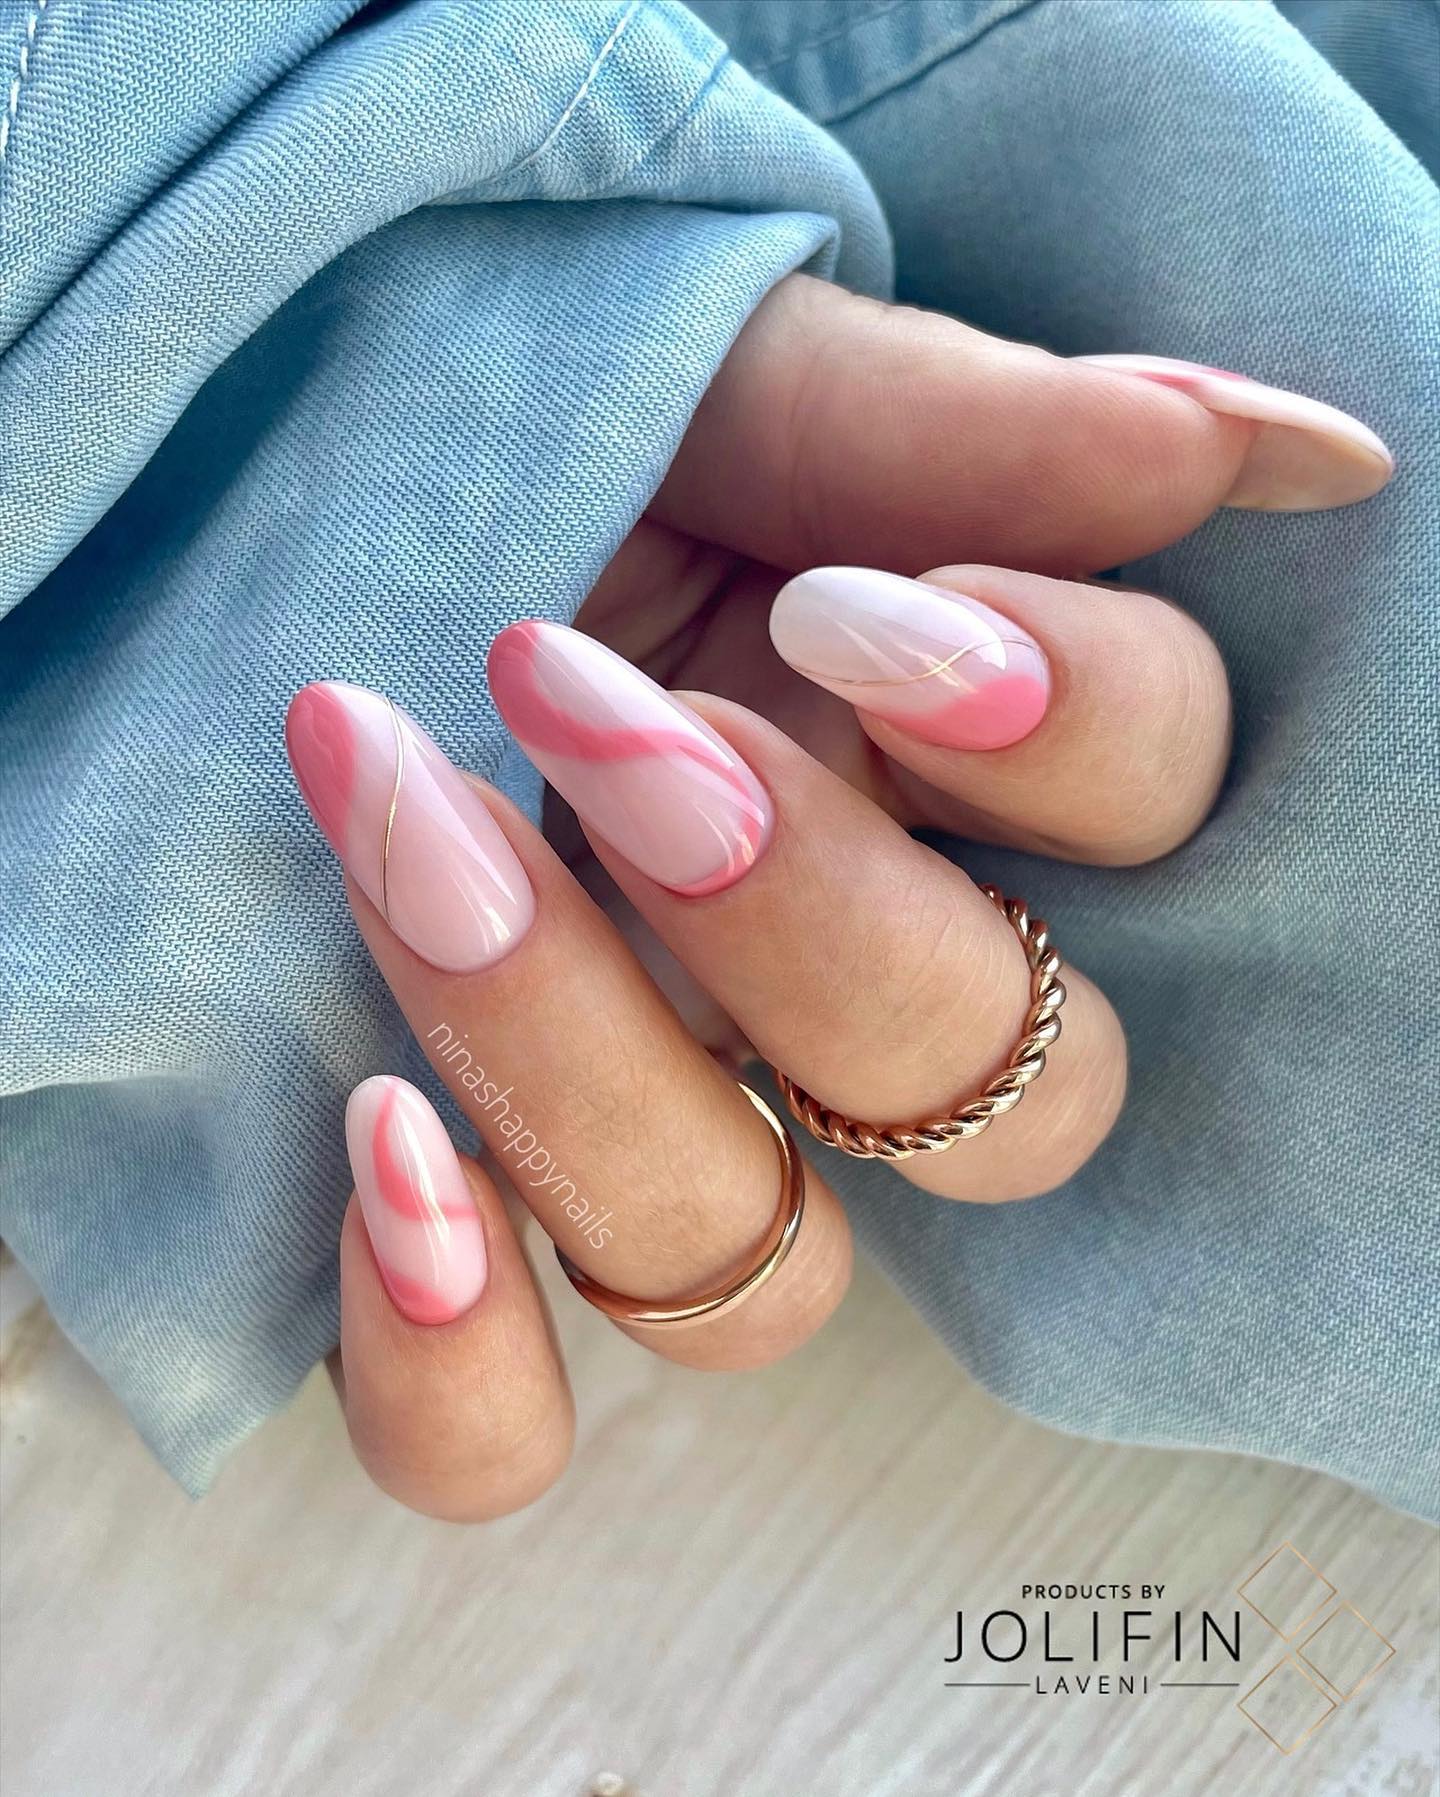 Debe ser una sensación increíble tener estas uñas en forma de remolino.  Grandes remolinos rosados ​​y algunos dorados hacen que estas uñas sean fabulosas.